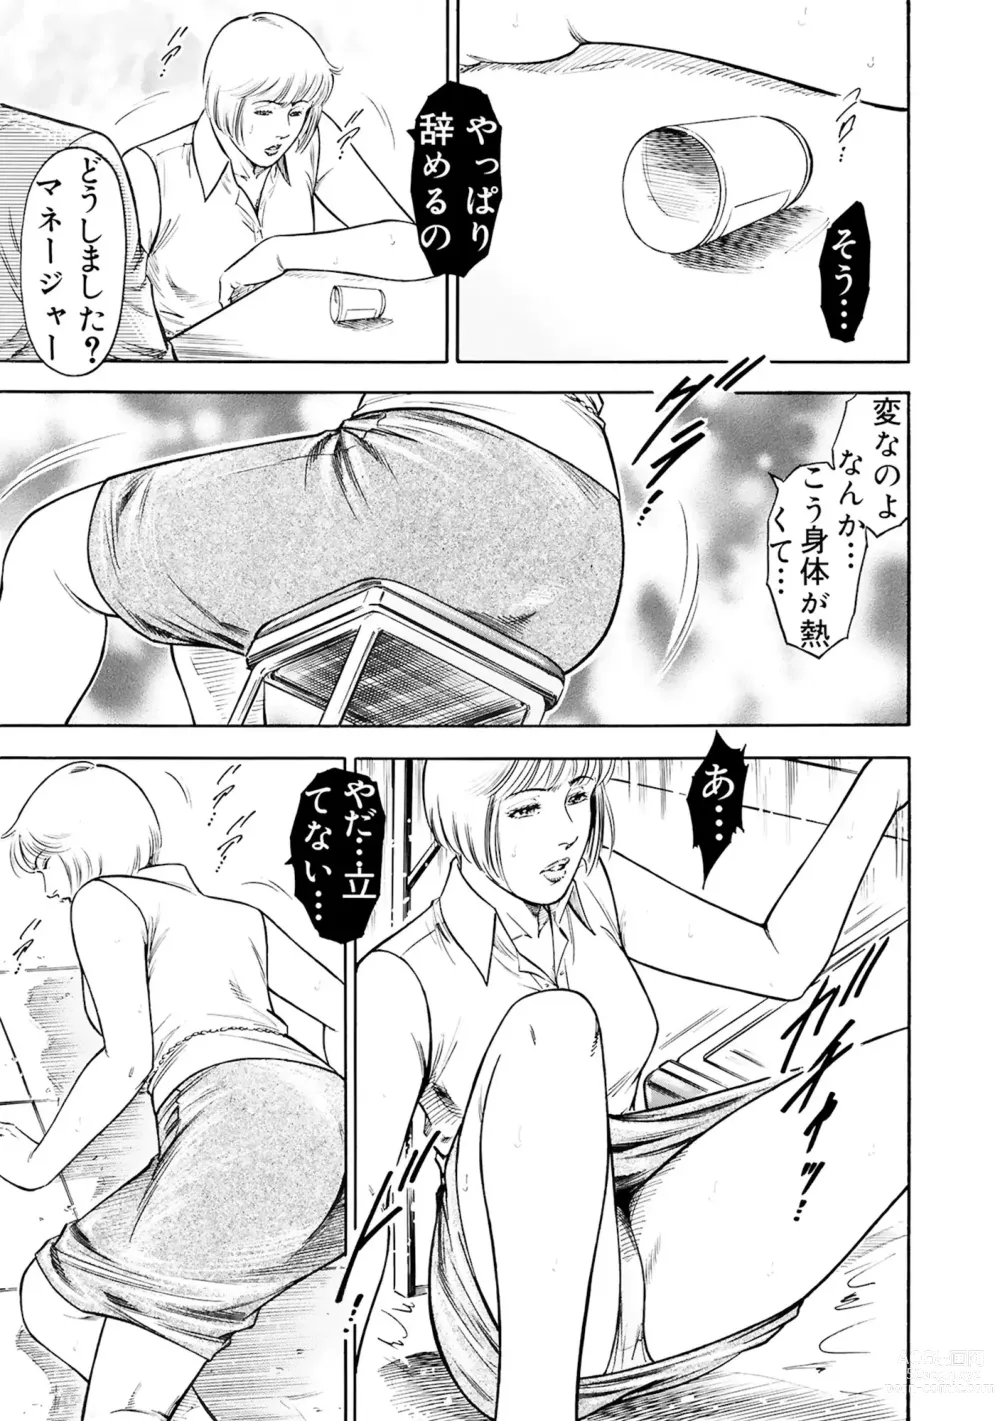 Page 11 of manga Jitsuroku Shouwaru 3 Bijin Joushi Biyaku o Nomasare Buka no SEX Doll ni